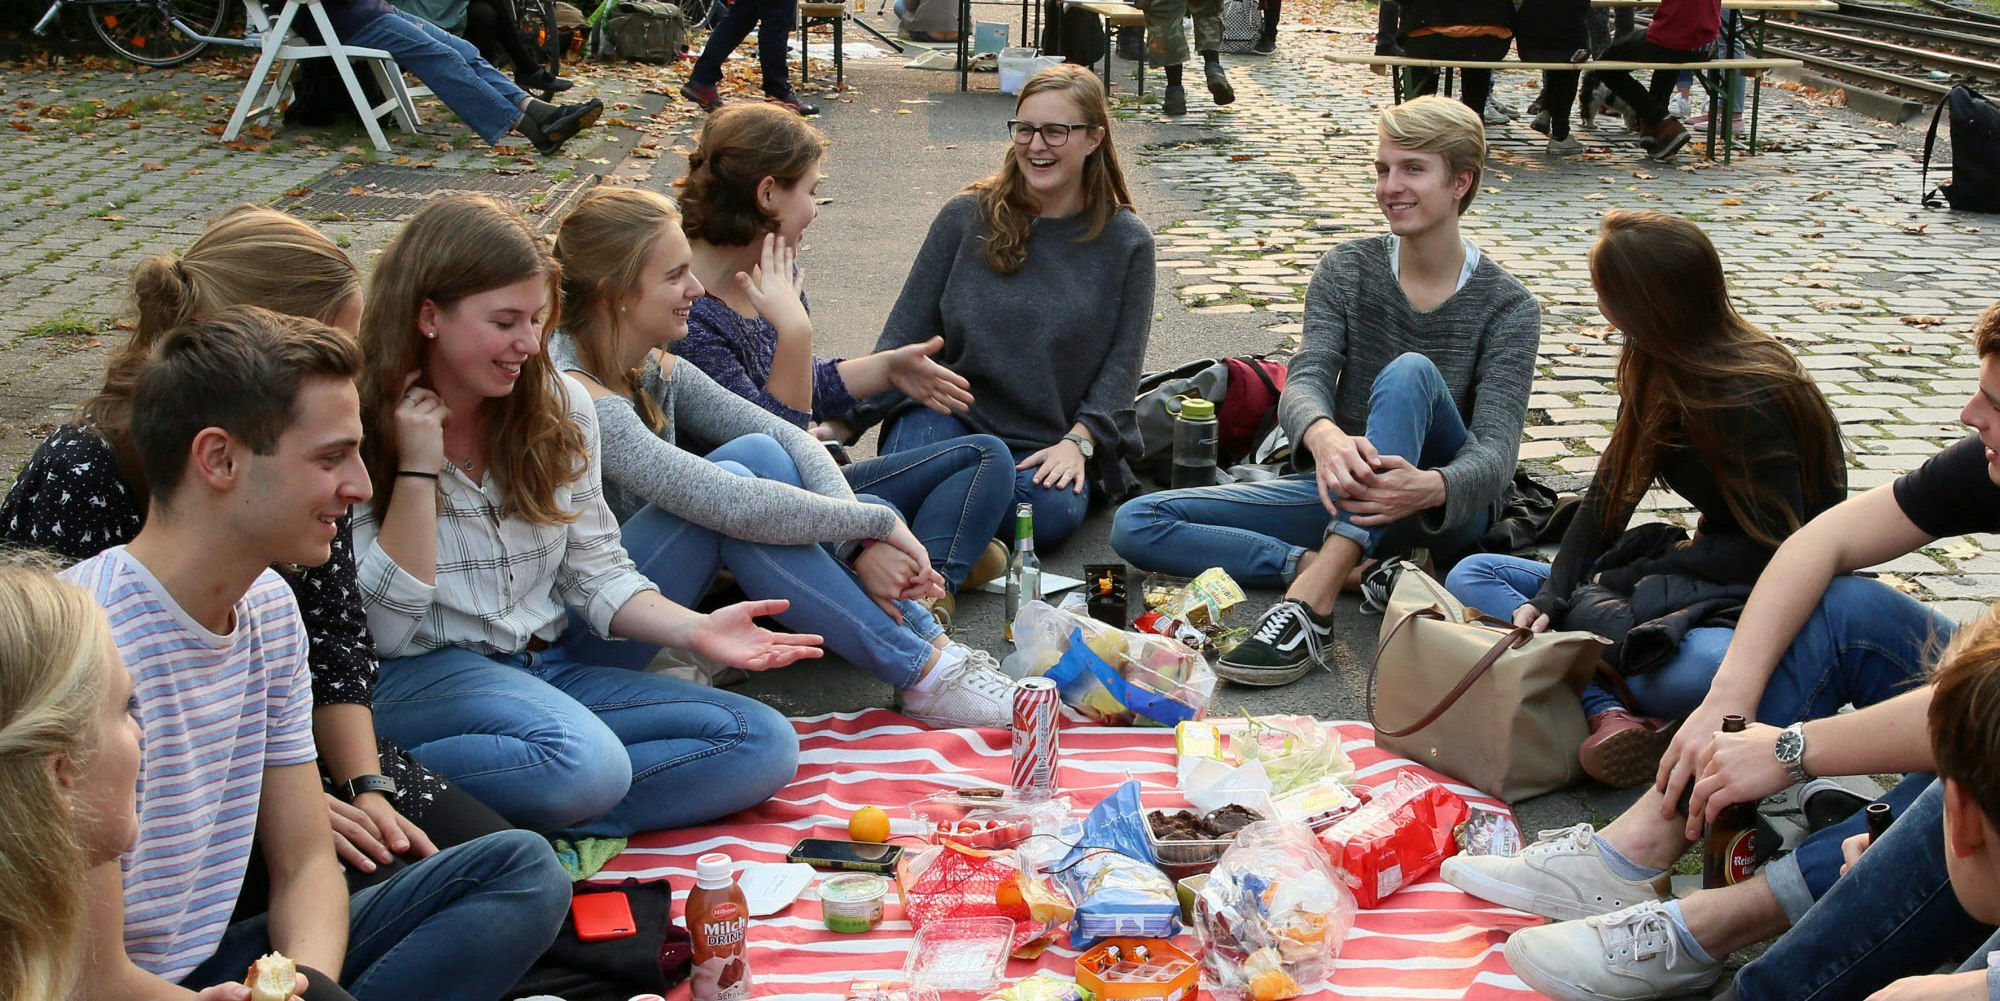 Picknicken für saubere Luft und eine höhere Aufenthaltsqualität an der Zülpicher Straße